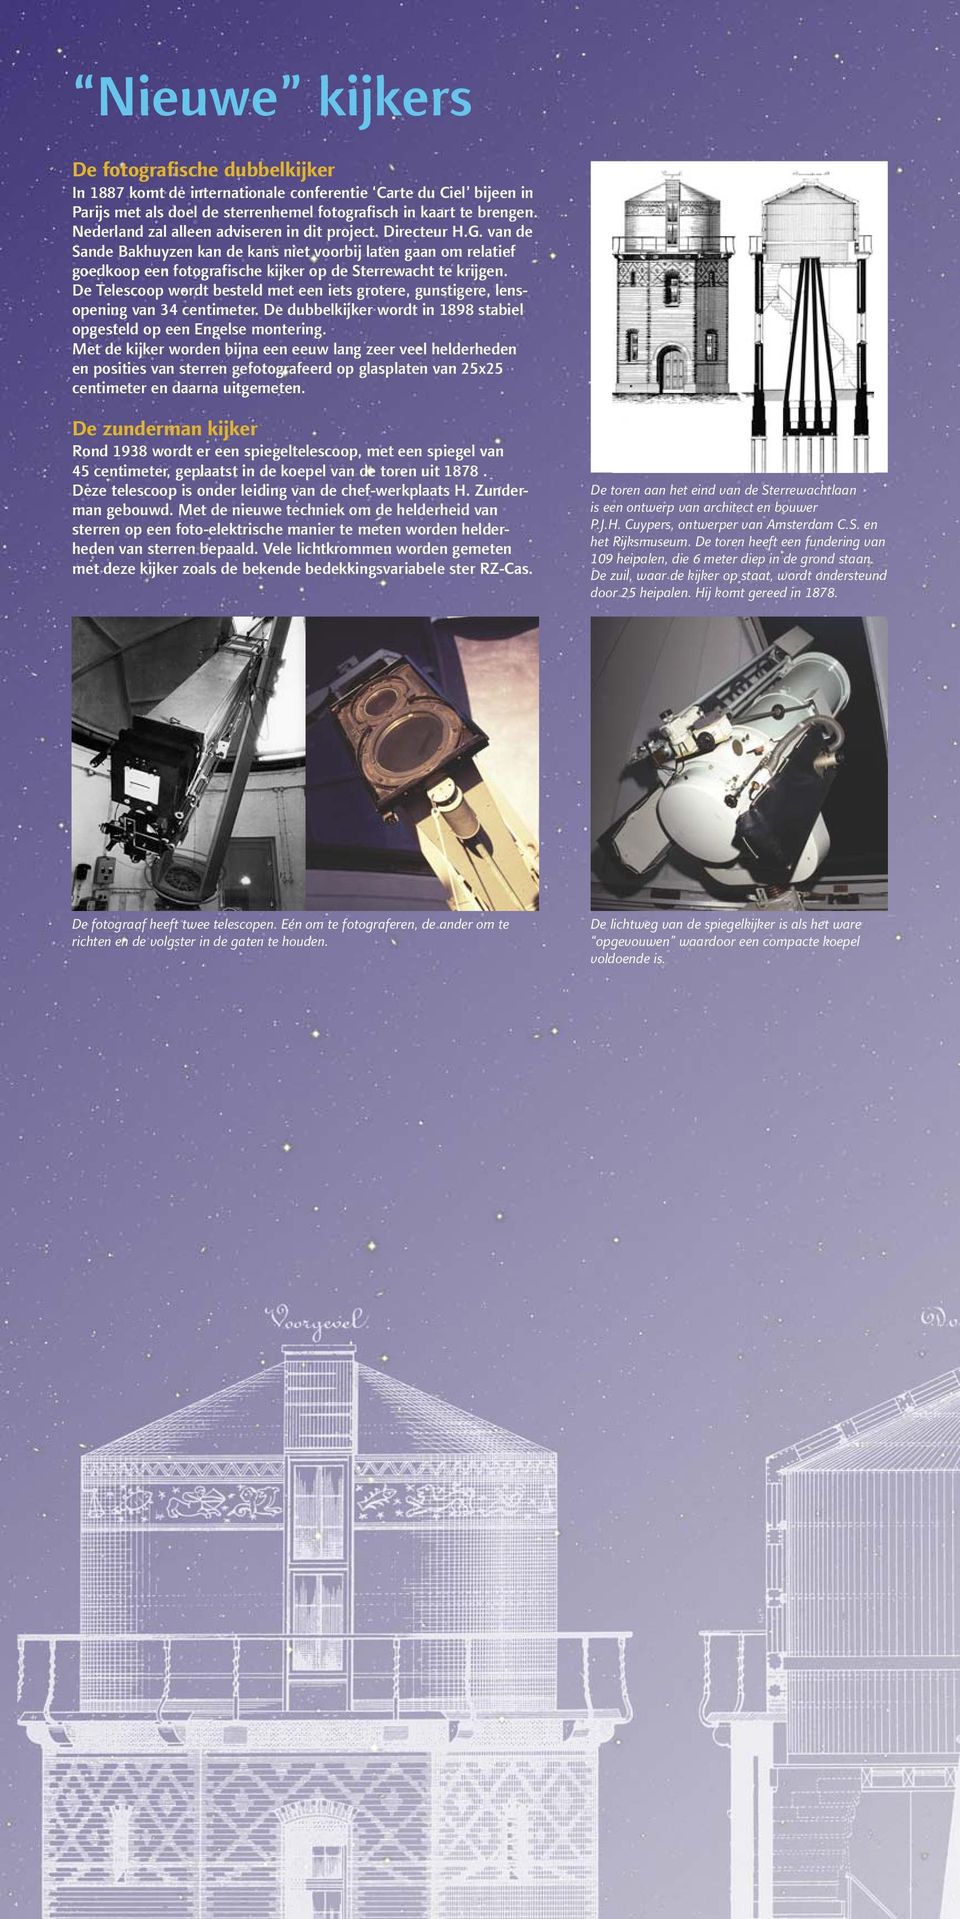 De Telescoop wordt besteld met een iets grotere, gunstigere, lensopening van 34 centimeter. De dubbelkijker wordt in 1898 stabiel opgesteld op een Engelse montering.